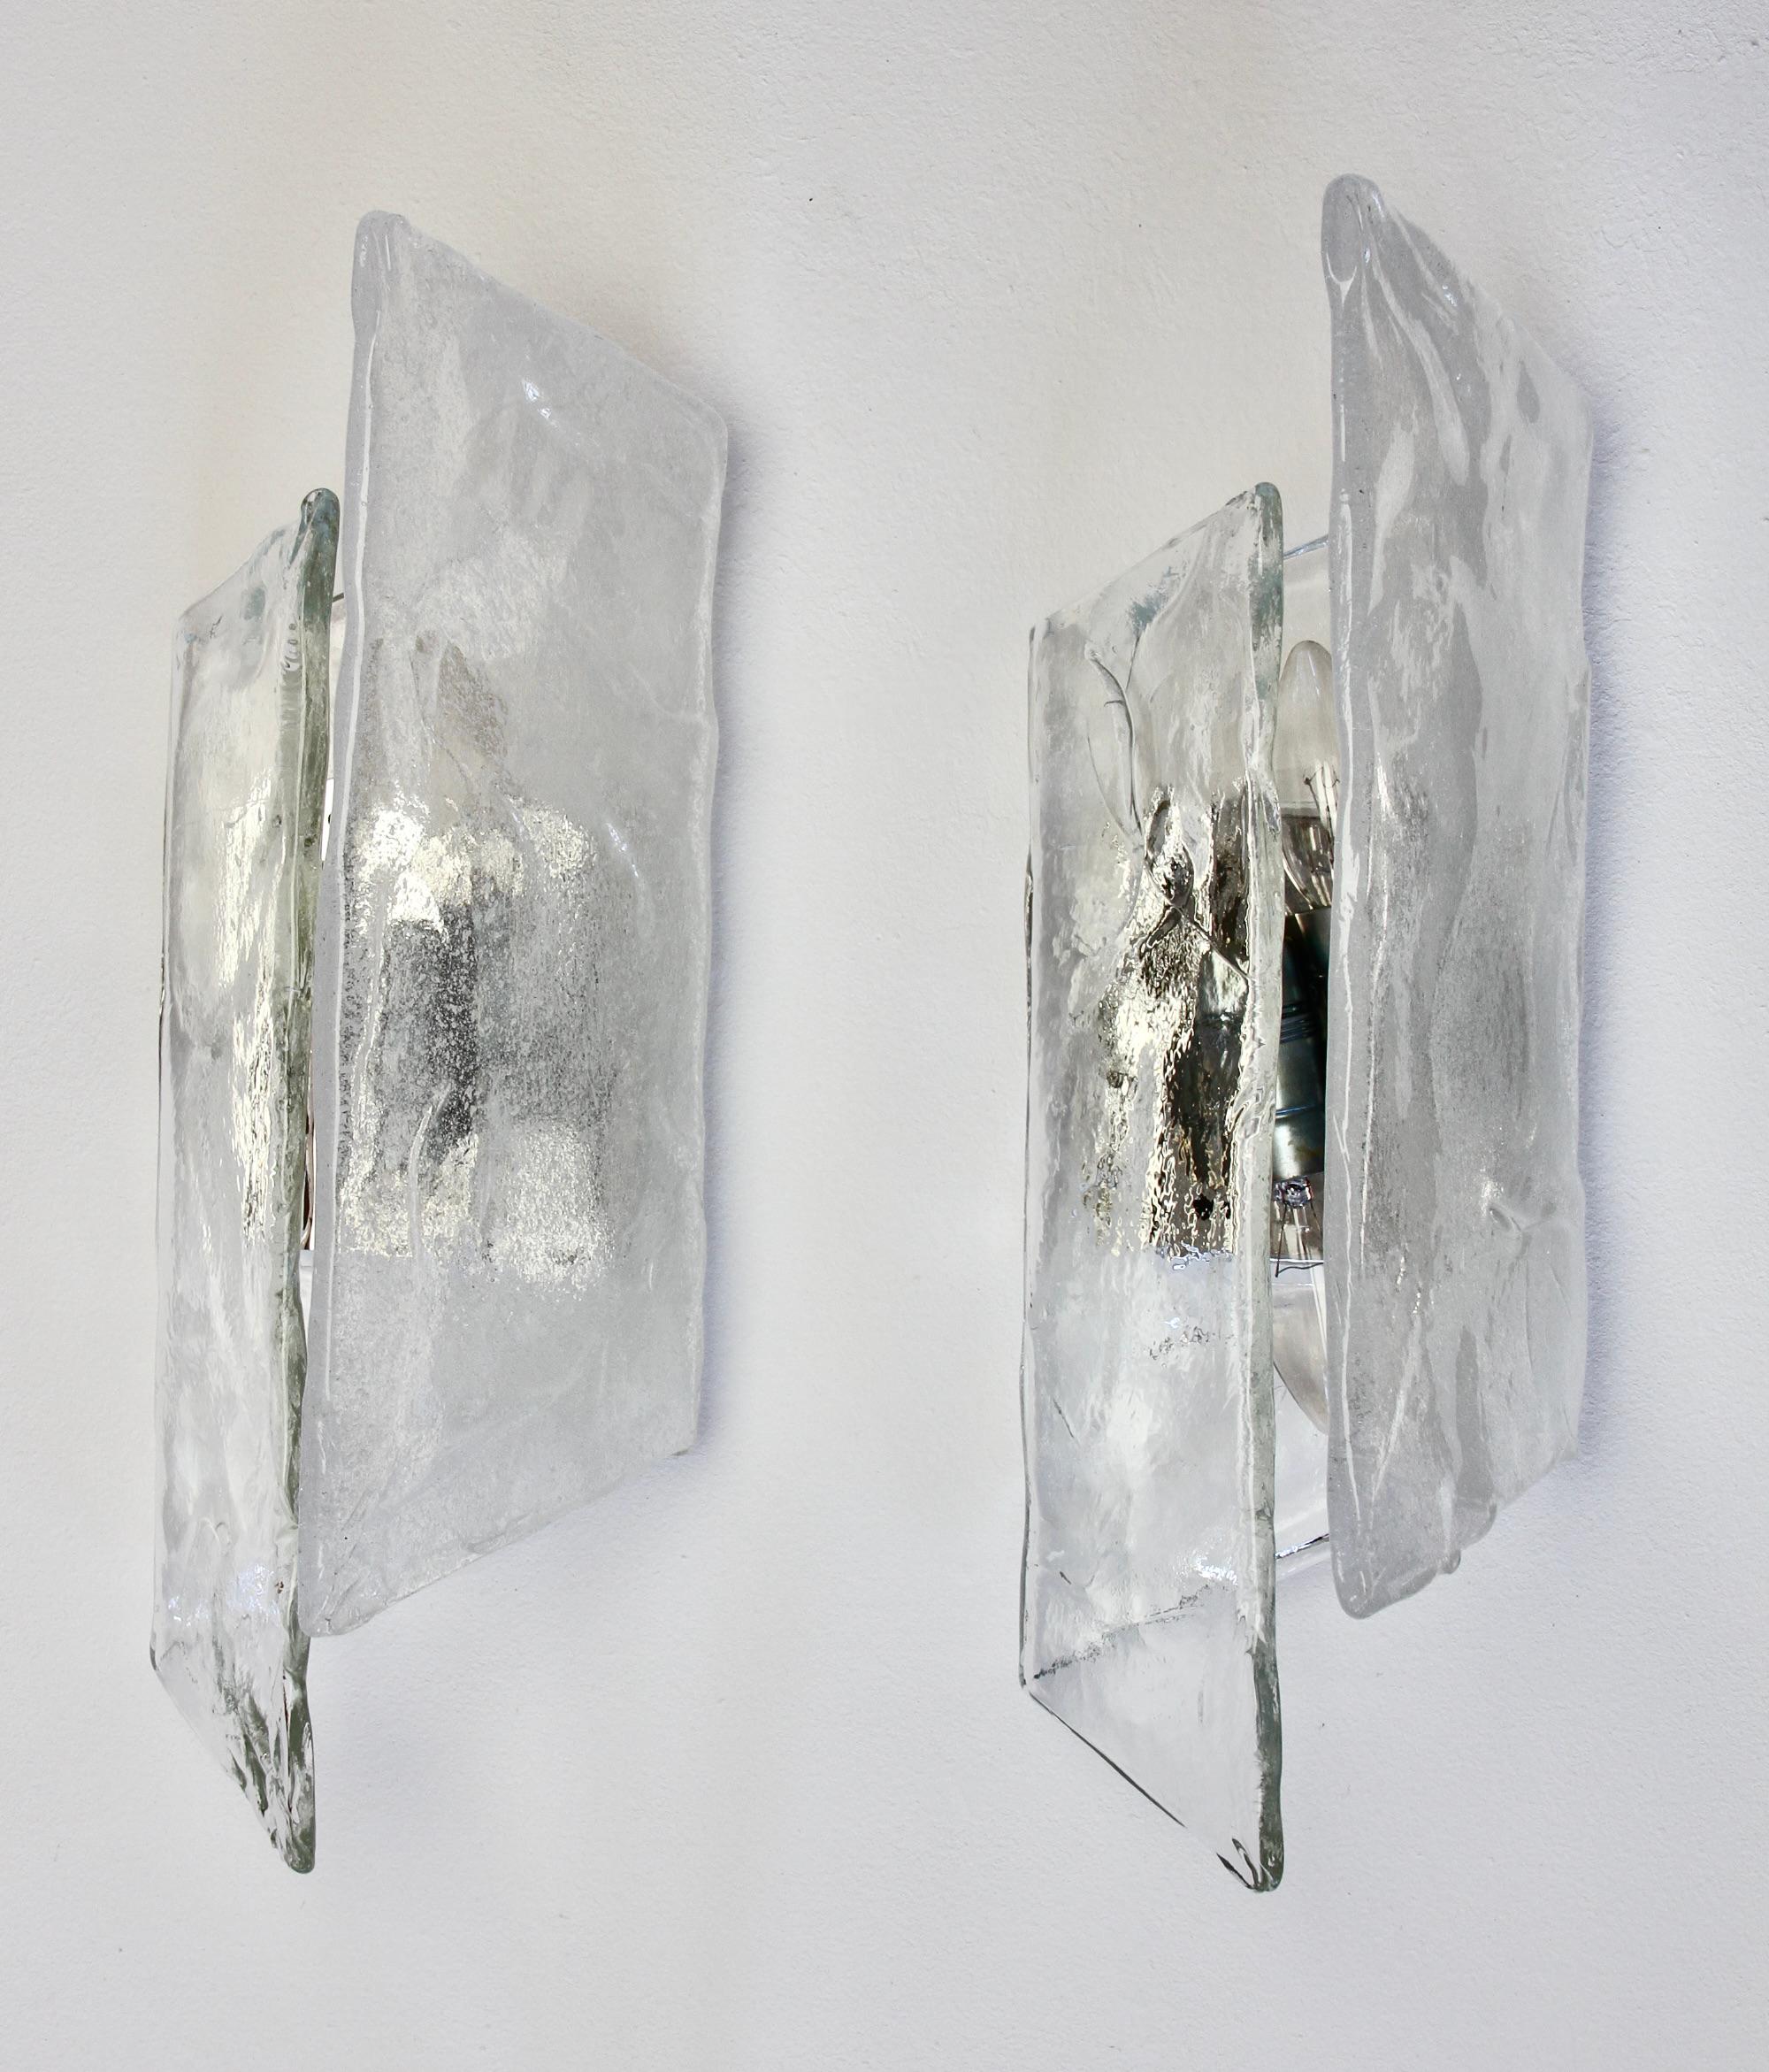 Seltenes Paar Wandlampen aus poliertem Stahl, weißem und klarem Murano-Glas von dem italienischen Murano-Glas-Designer Carlo Nason für den berühmten österreichischen Beleuchtungshersteller Kalmar, ca. Ende der 1970er Jahre. Jede Leuchte besteht aus